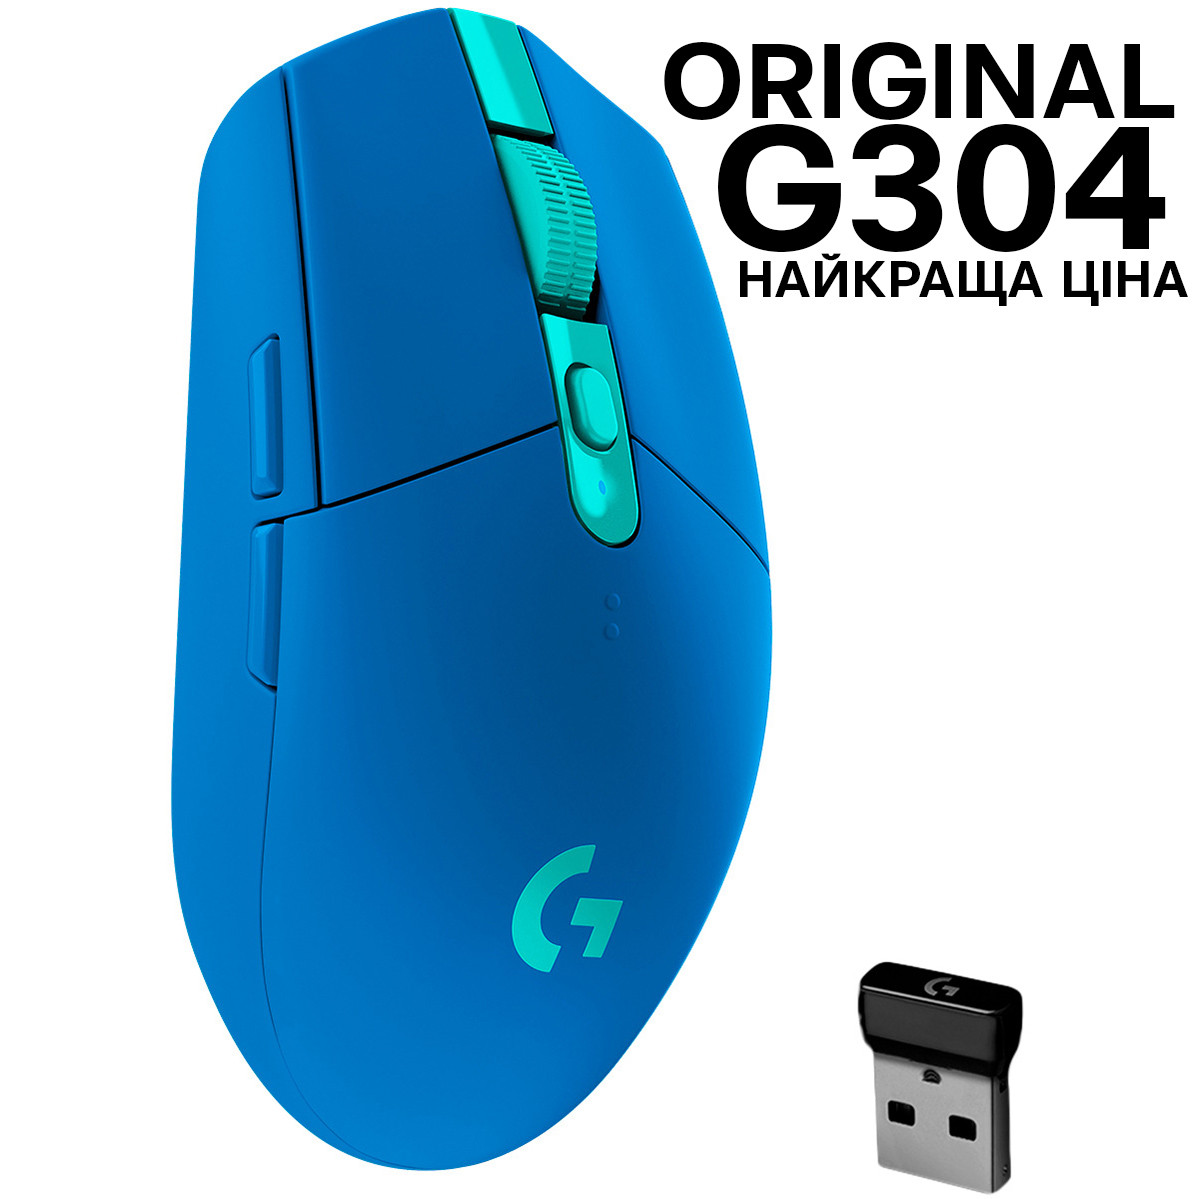 ОРИГІНАЛ Logitech G304 Wireless Blue (910-006018) азійська версія G305 (910-006014)